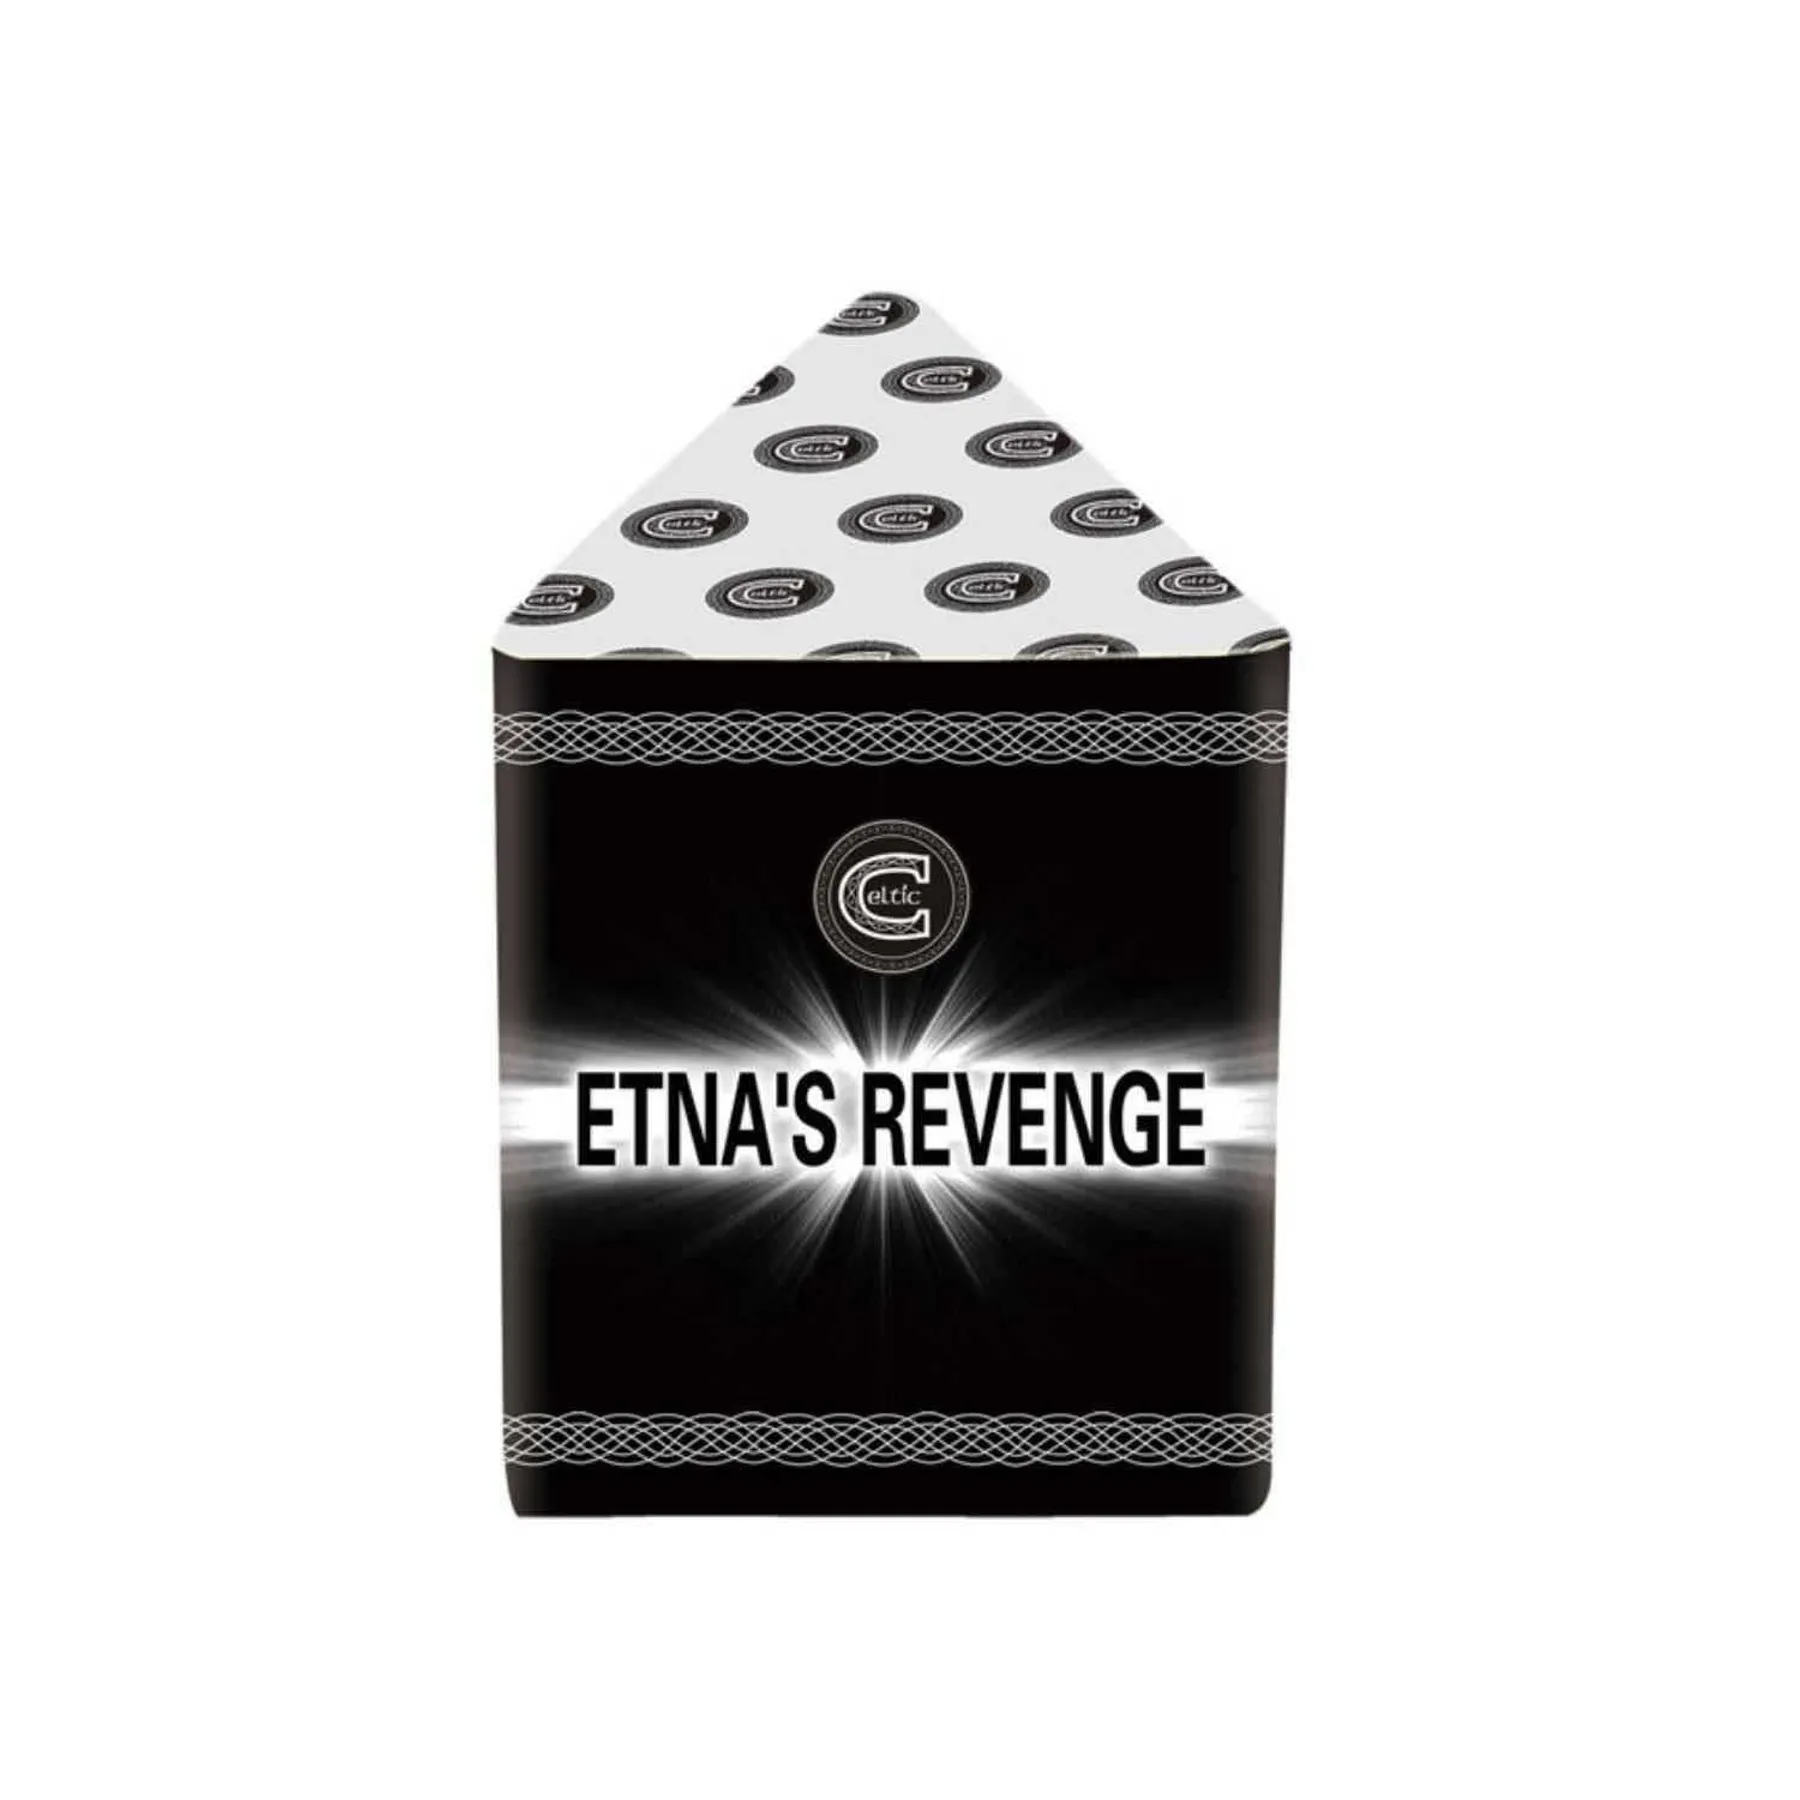 Etna's Revenge Low Noise Small Garden Celtic Fireworks